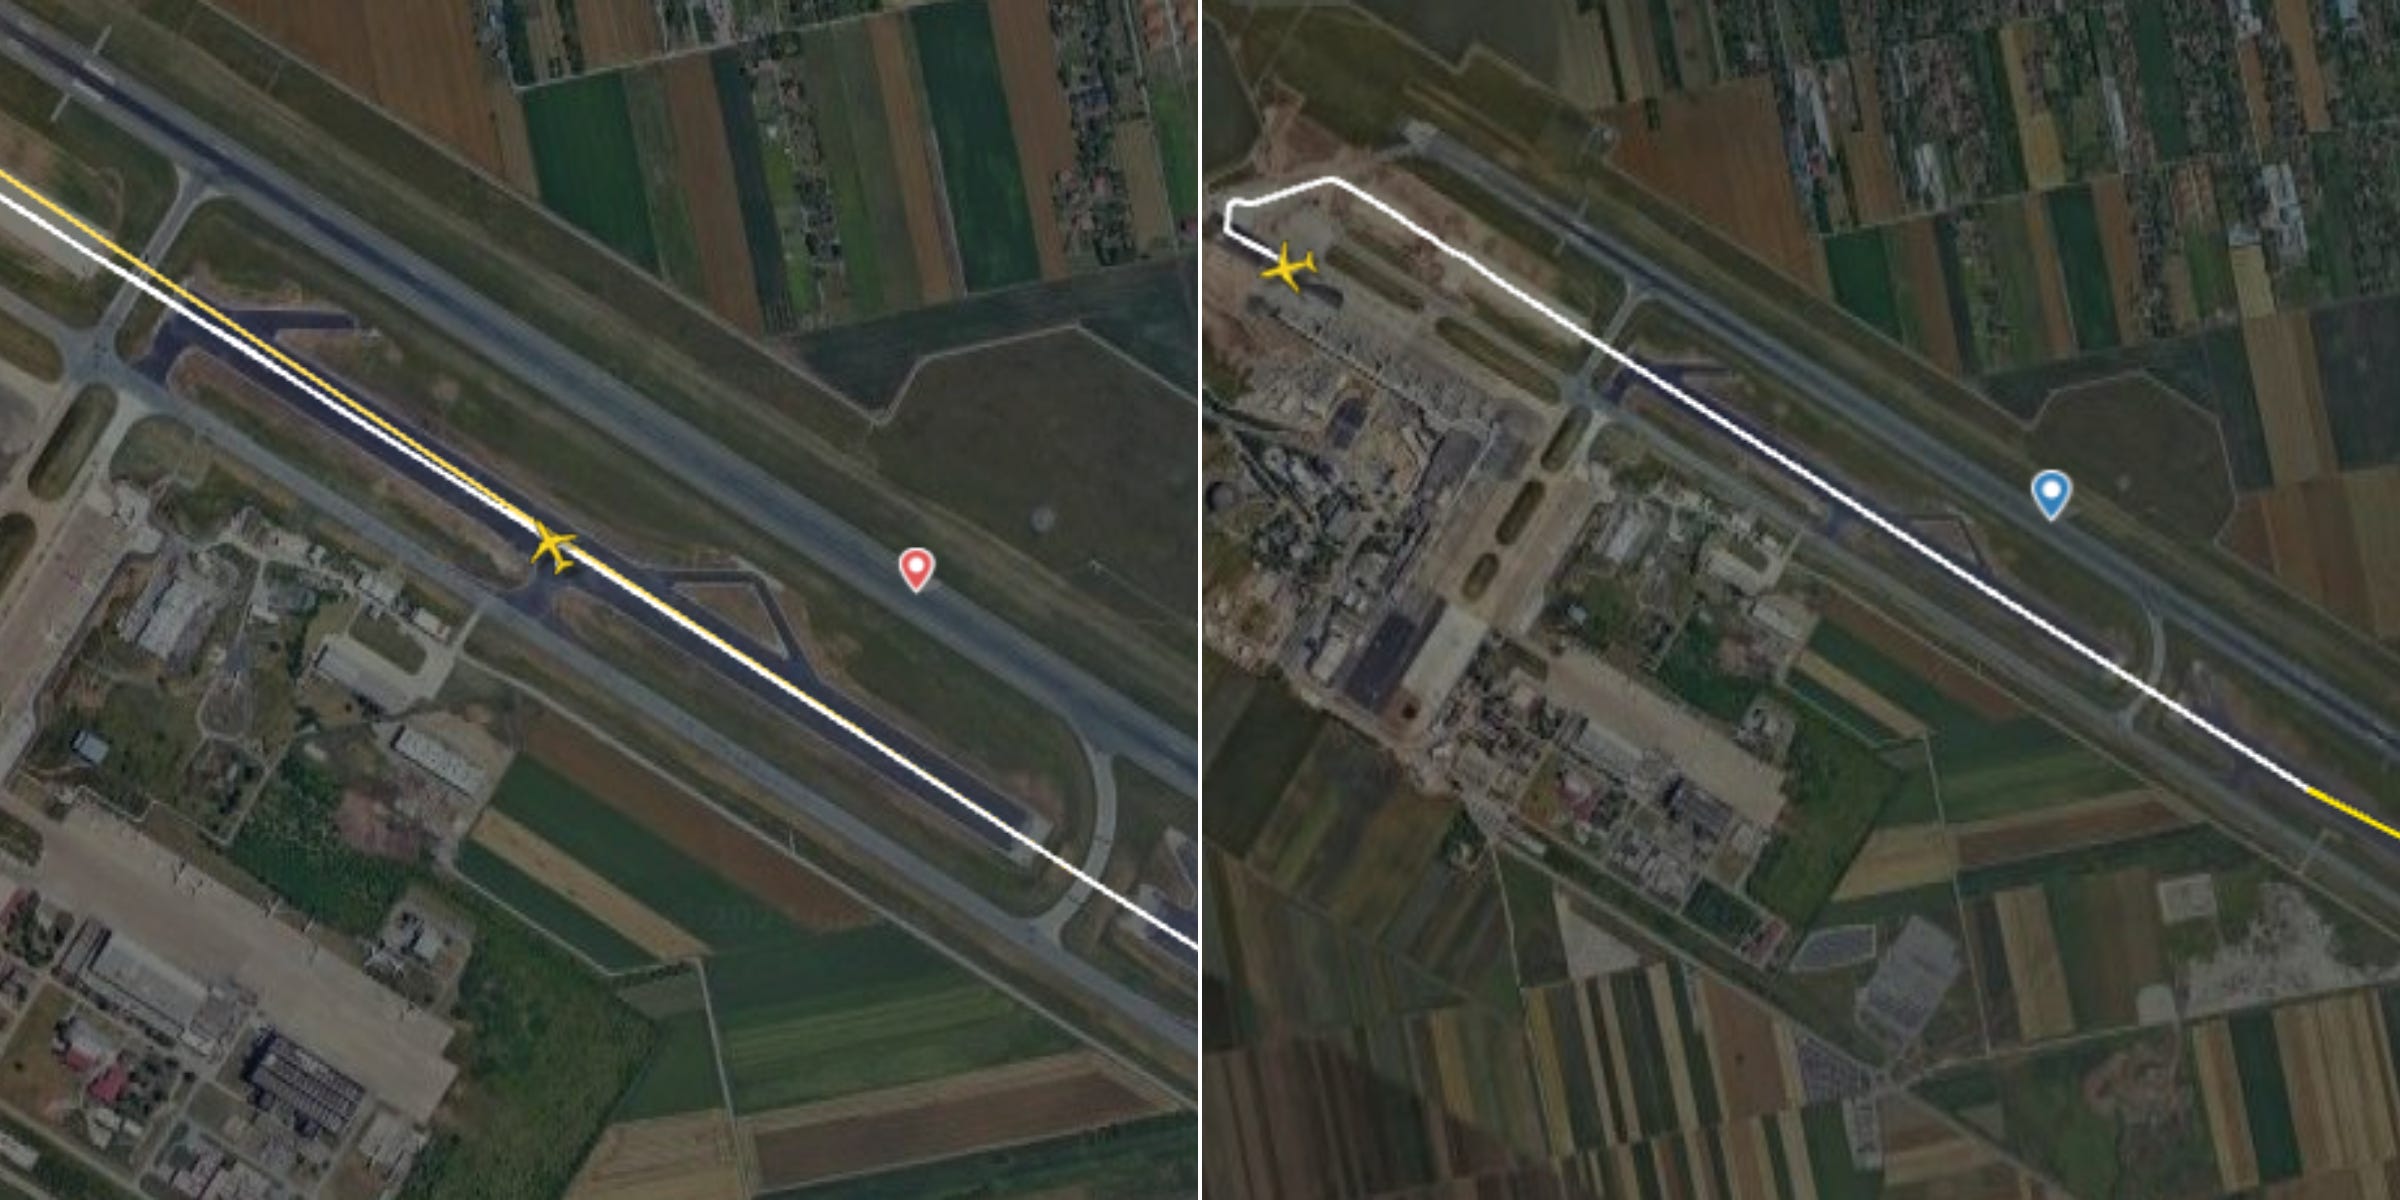 Links: Flug JU324 begann am Sonntag seinen Startlauf auf halber Höhe der Landebahn.  Rechts: Eine frühere Wiederholung desselben Fluges zeigt, wie das Flugzeug die gesamte Landebahnlänge nutzt.